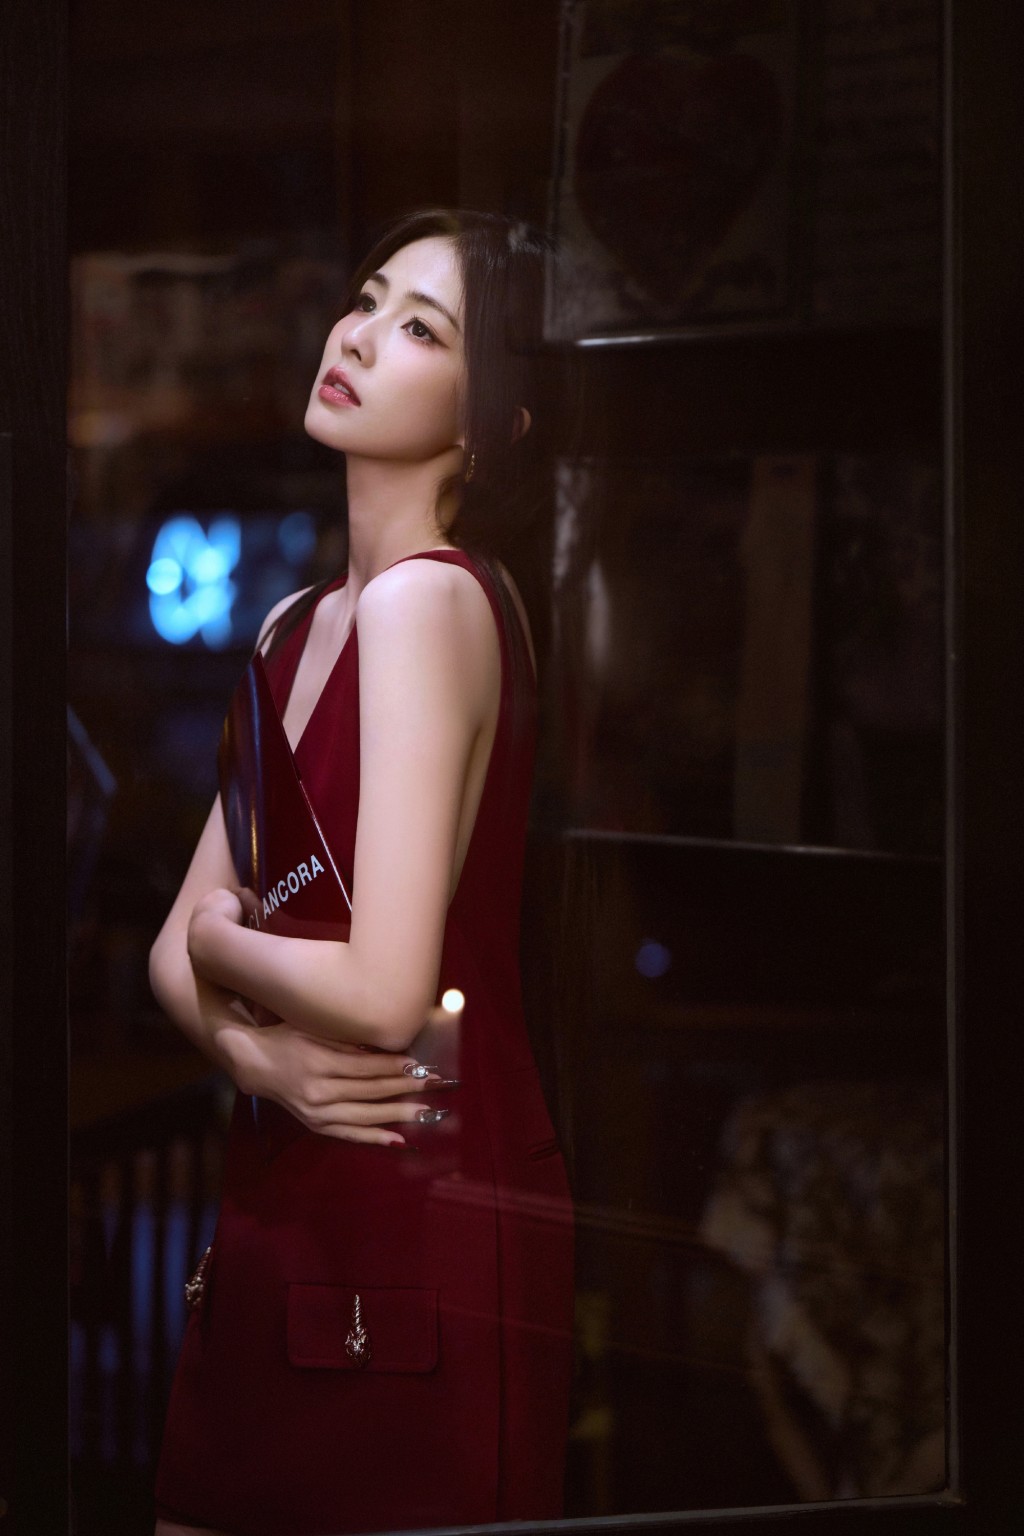 白鹿公主切造型红裙优雅风情写真图片